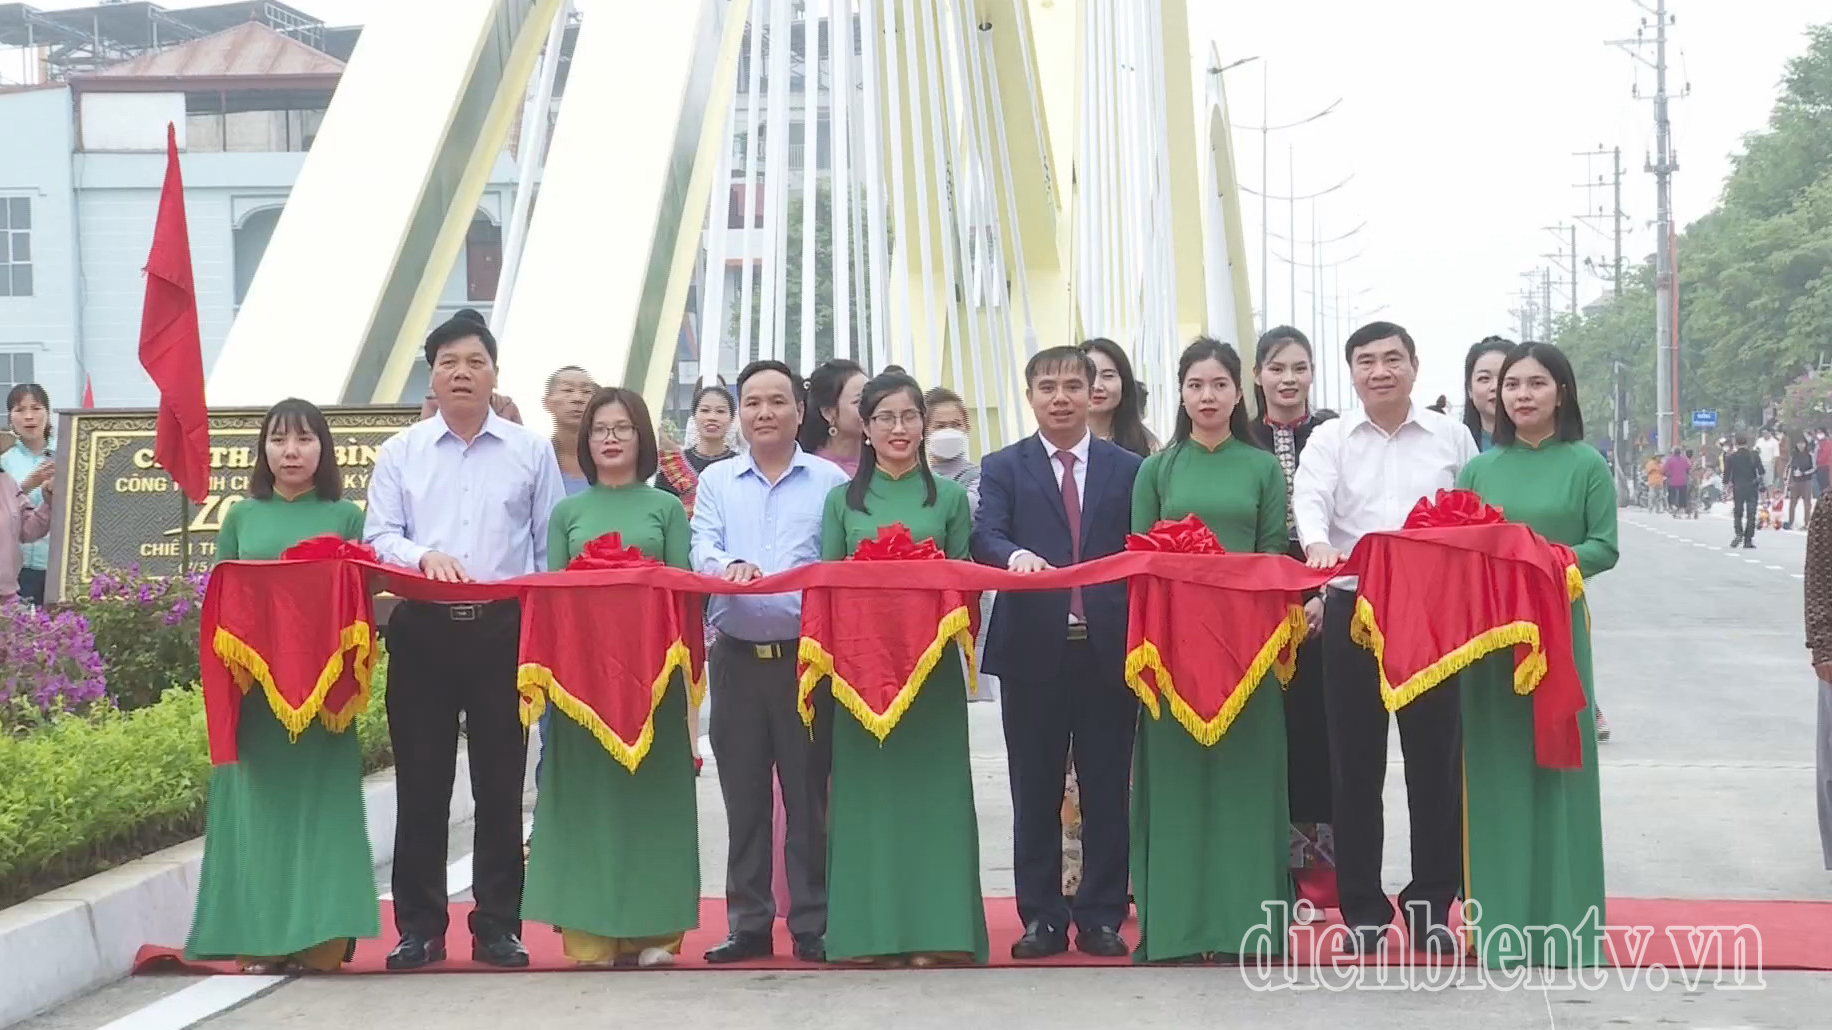 Đồng chí Trần Quốc Cường, Uỷ viên BCH Trung ương Đảng, Bí thư Tỉnh uỷ và các đại biểu thực hiện nghi thức thông xe cầu Thanh Bình.